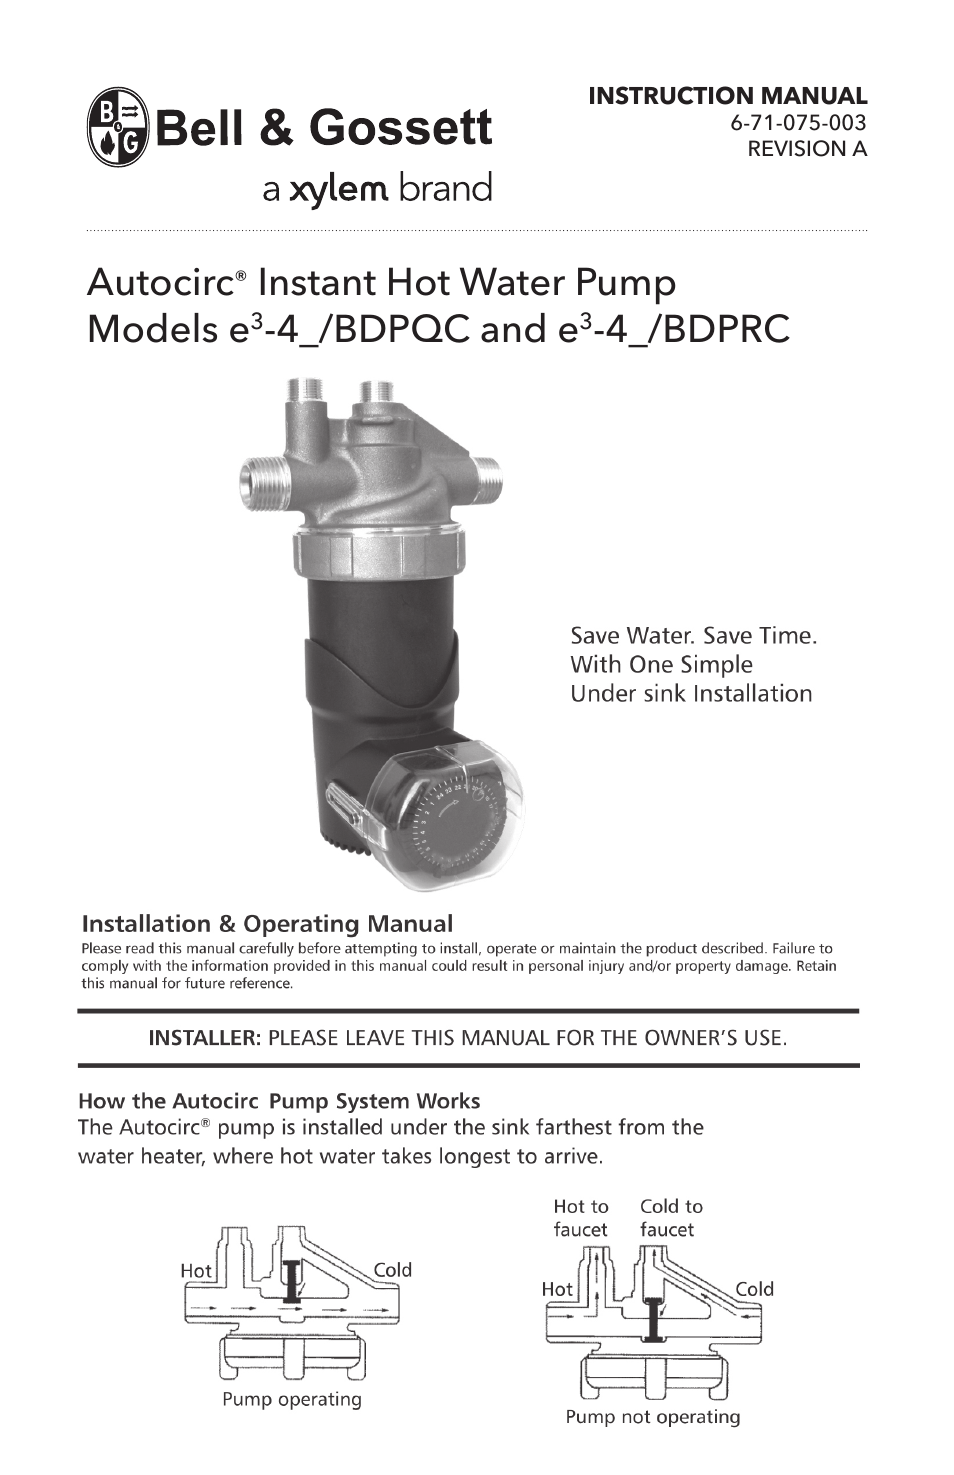 6 71 075 003A Autocirc Instant Hot Water Pump Models e3-4/BDPQC